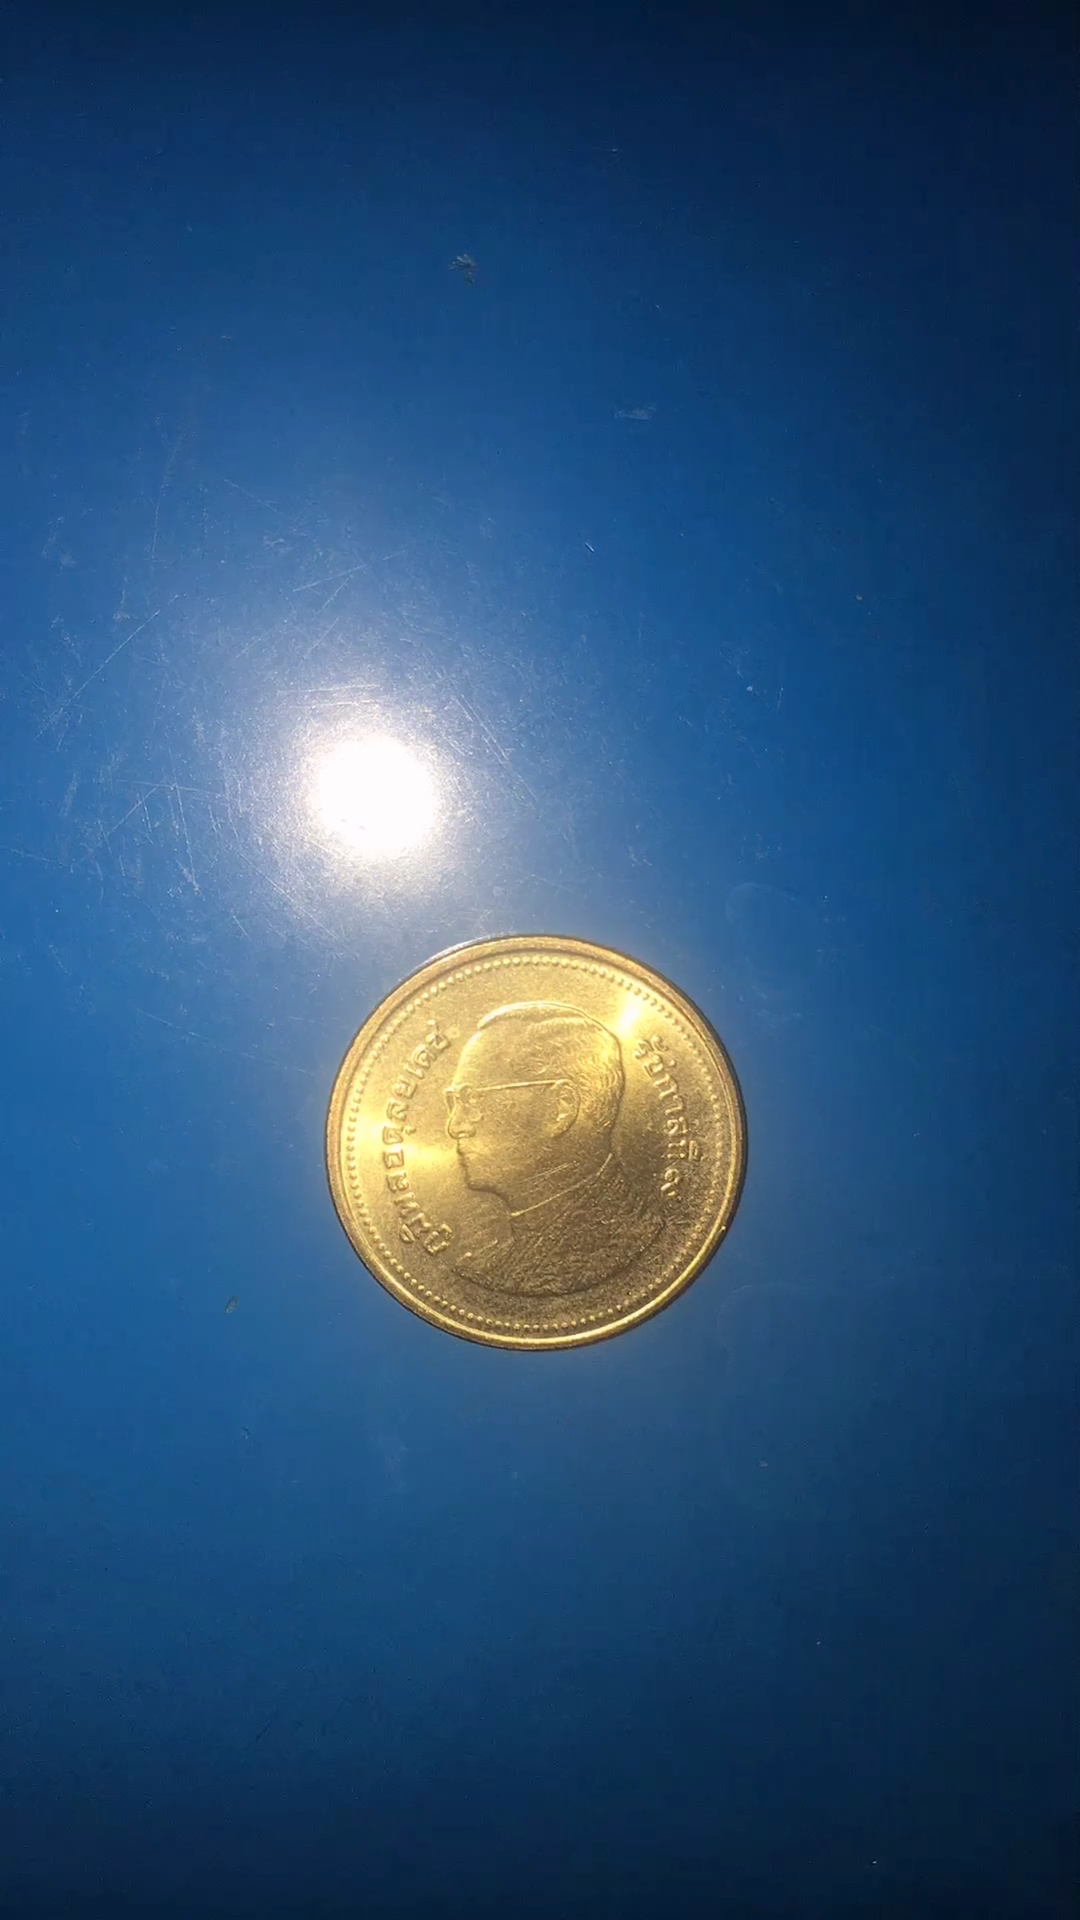 2泰铢硬币照片图片